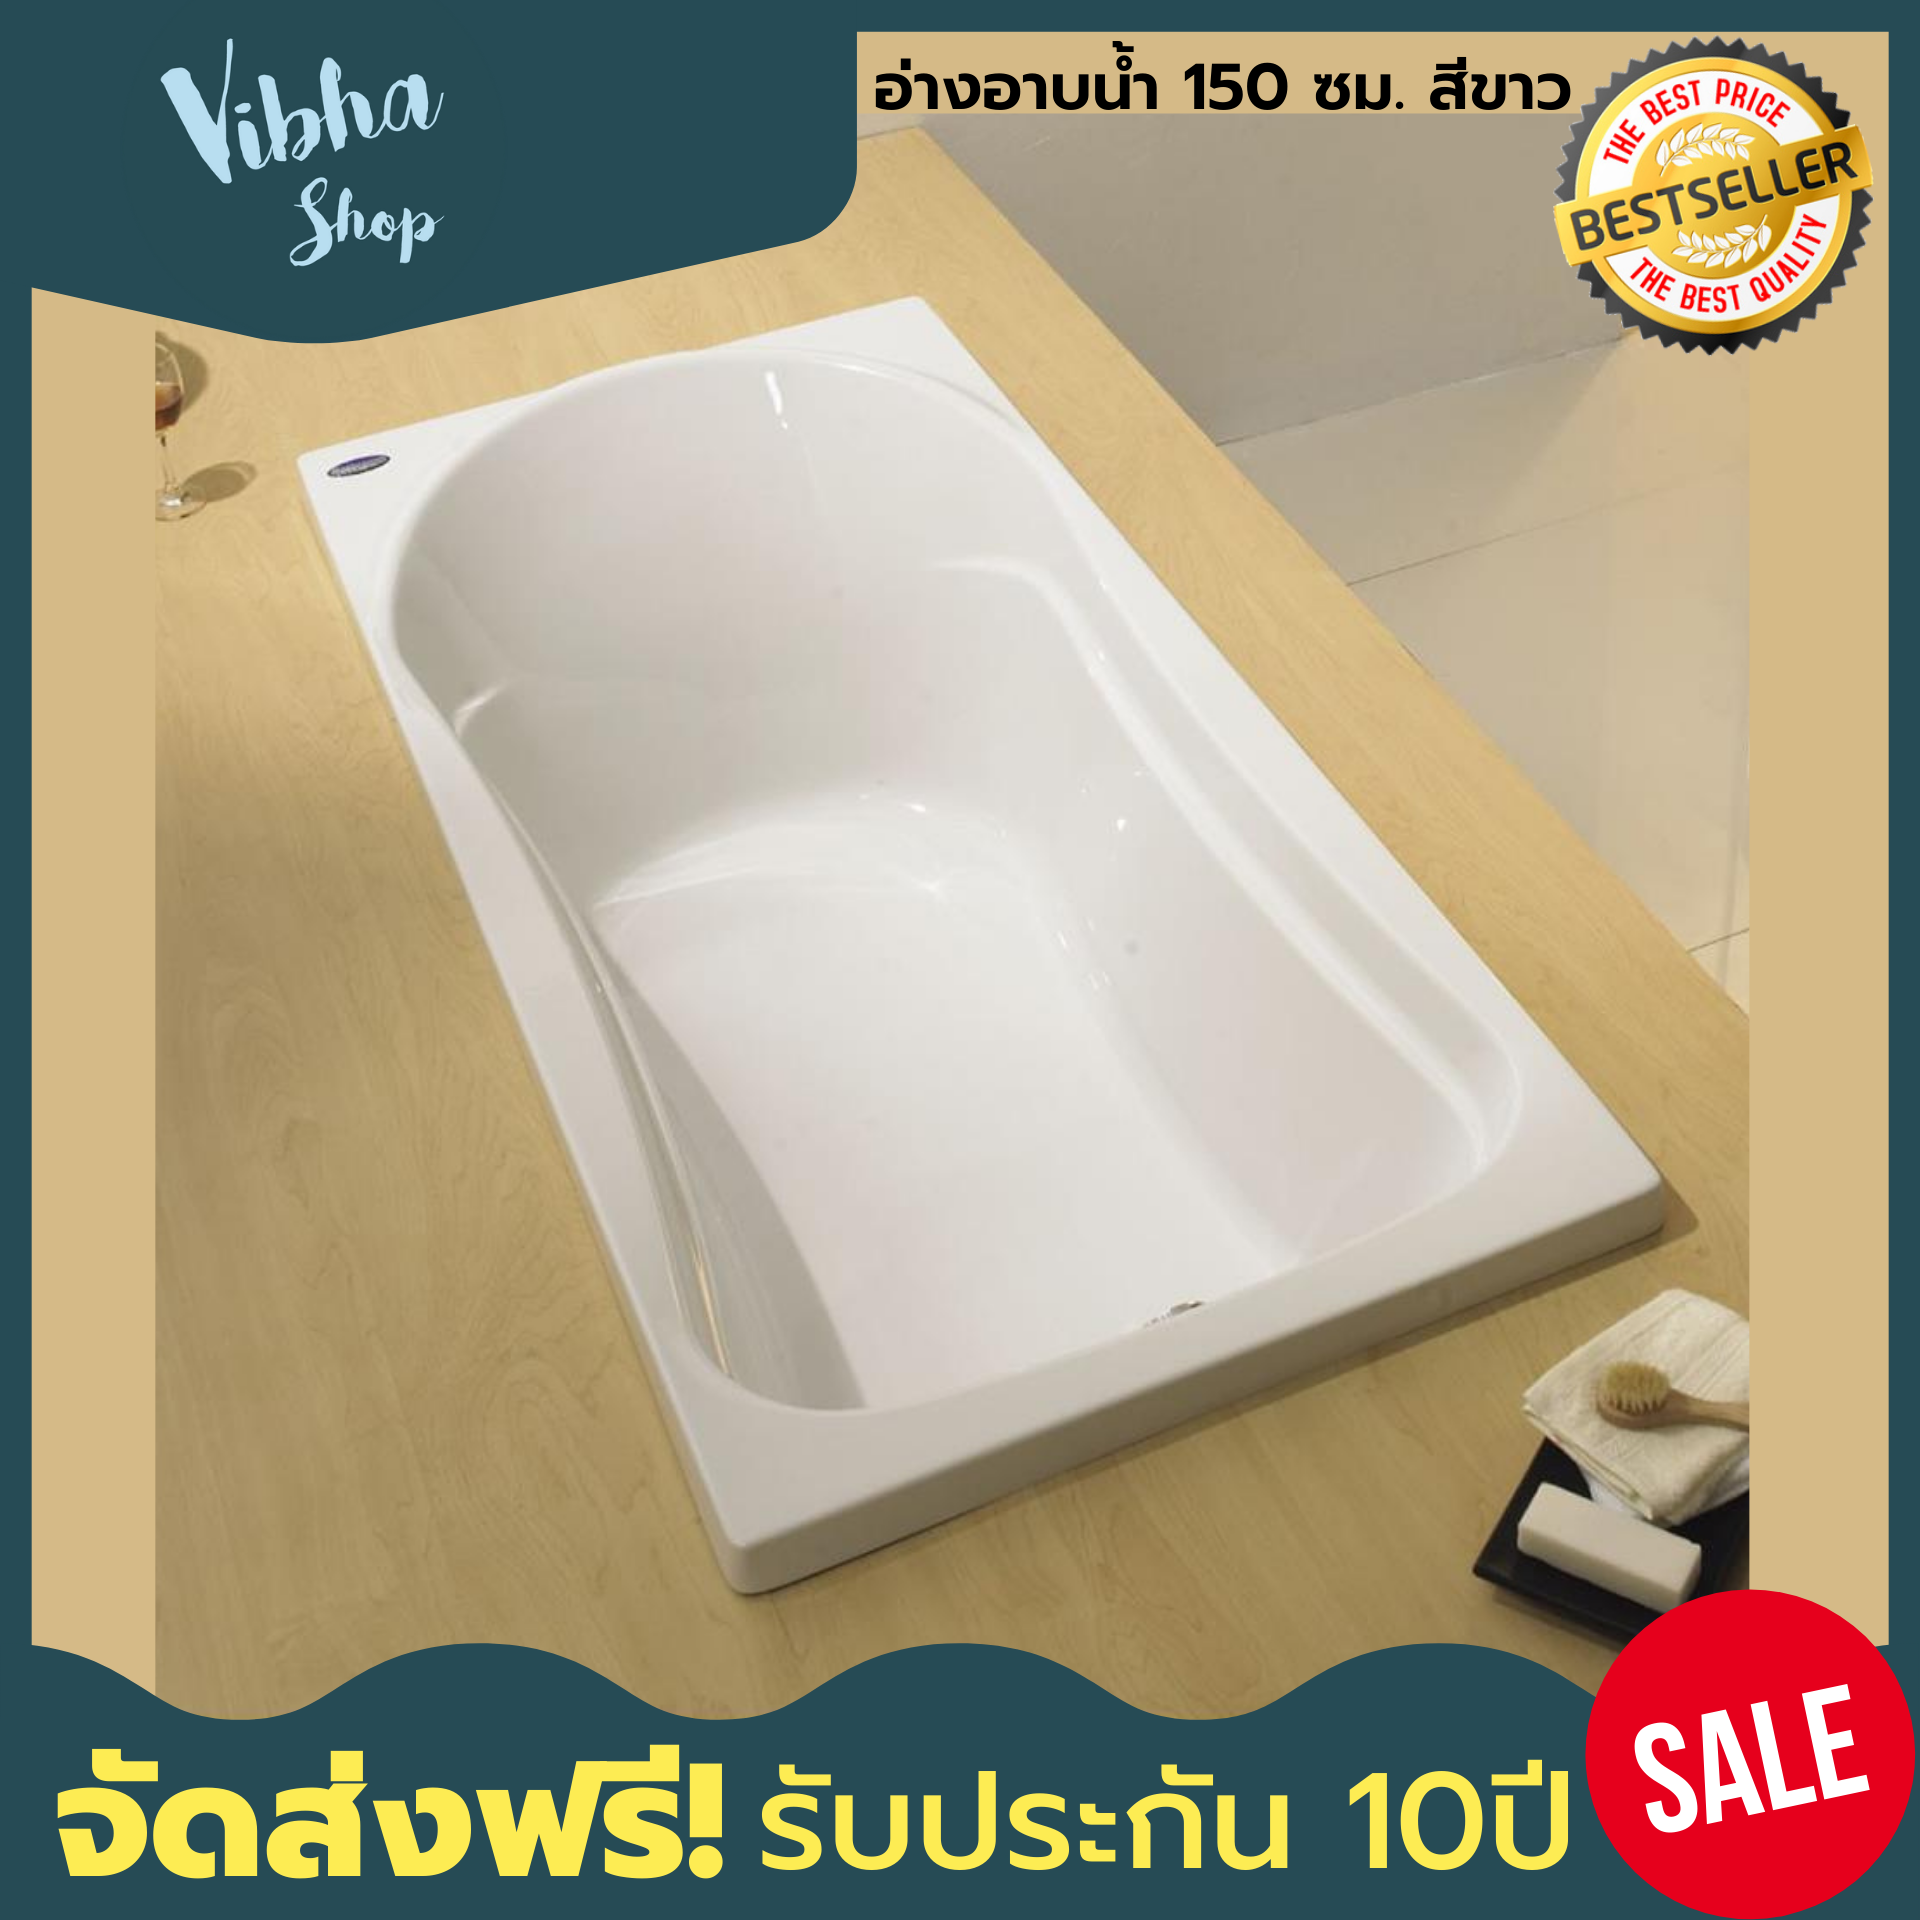 (ส่งฟรี) อ่างอาบน้ำ BATHROOM DESIGN 150 ซม. สีขาว (แถมฟรีตลับสายชาร์จเร็ว 3 รุ่น) อ่างอาบน้ำ อ่างจากุชชี่ อ่างอาบน้ํา ของแท้ประกัน 10ปี Vibha shop